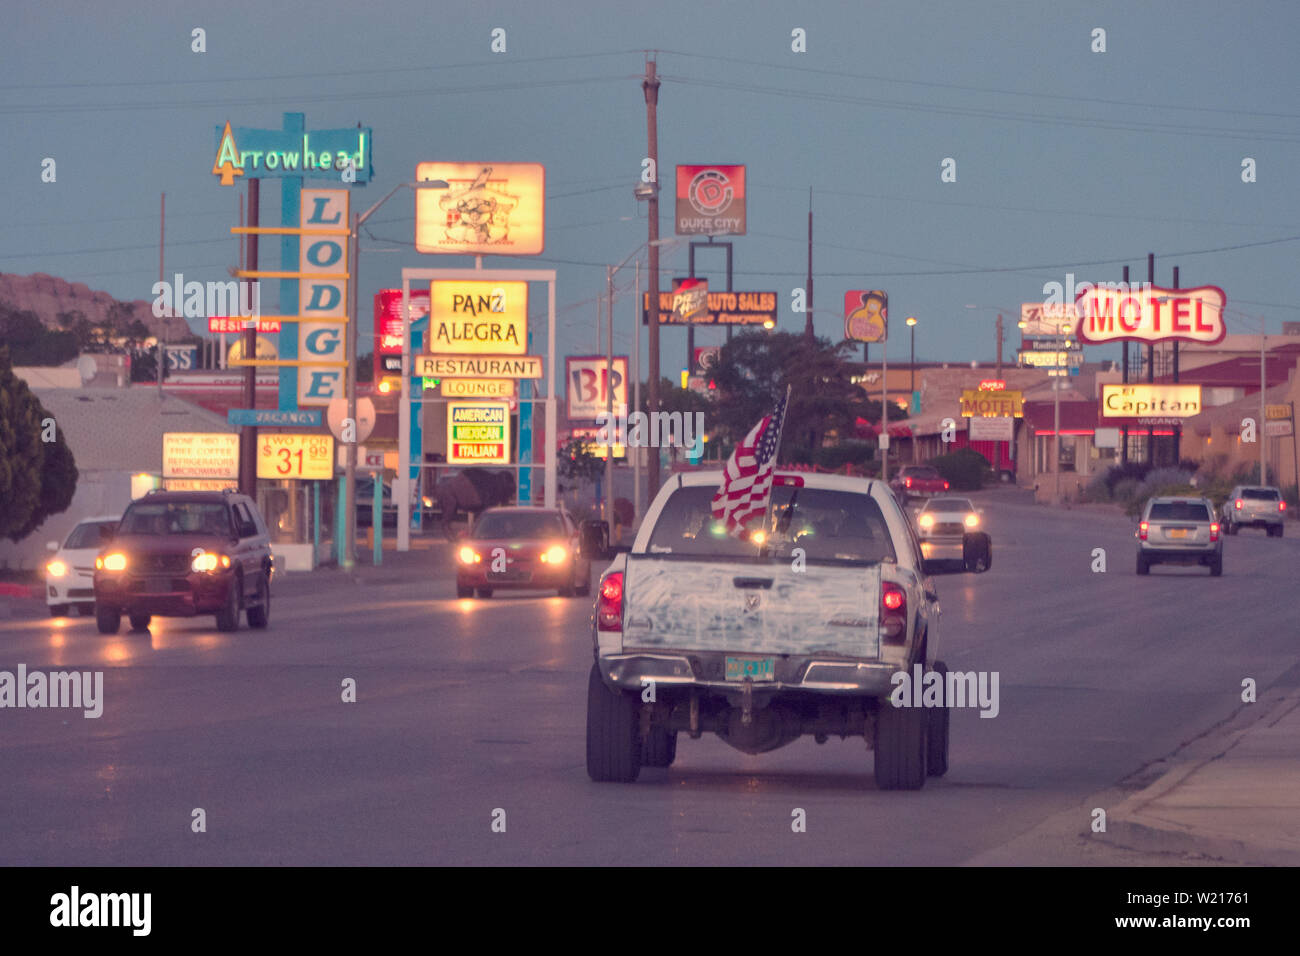 Dodge Ram Pick up truck, sulla storica Route 66 in Gallup New Mexico del 4 luglio 2019 Foto Stock